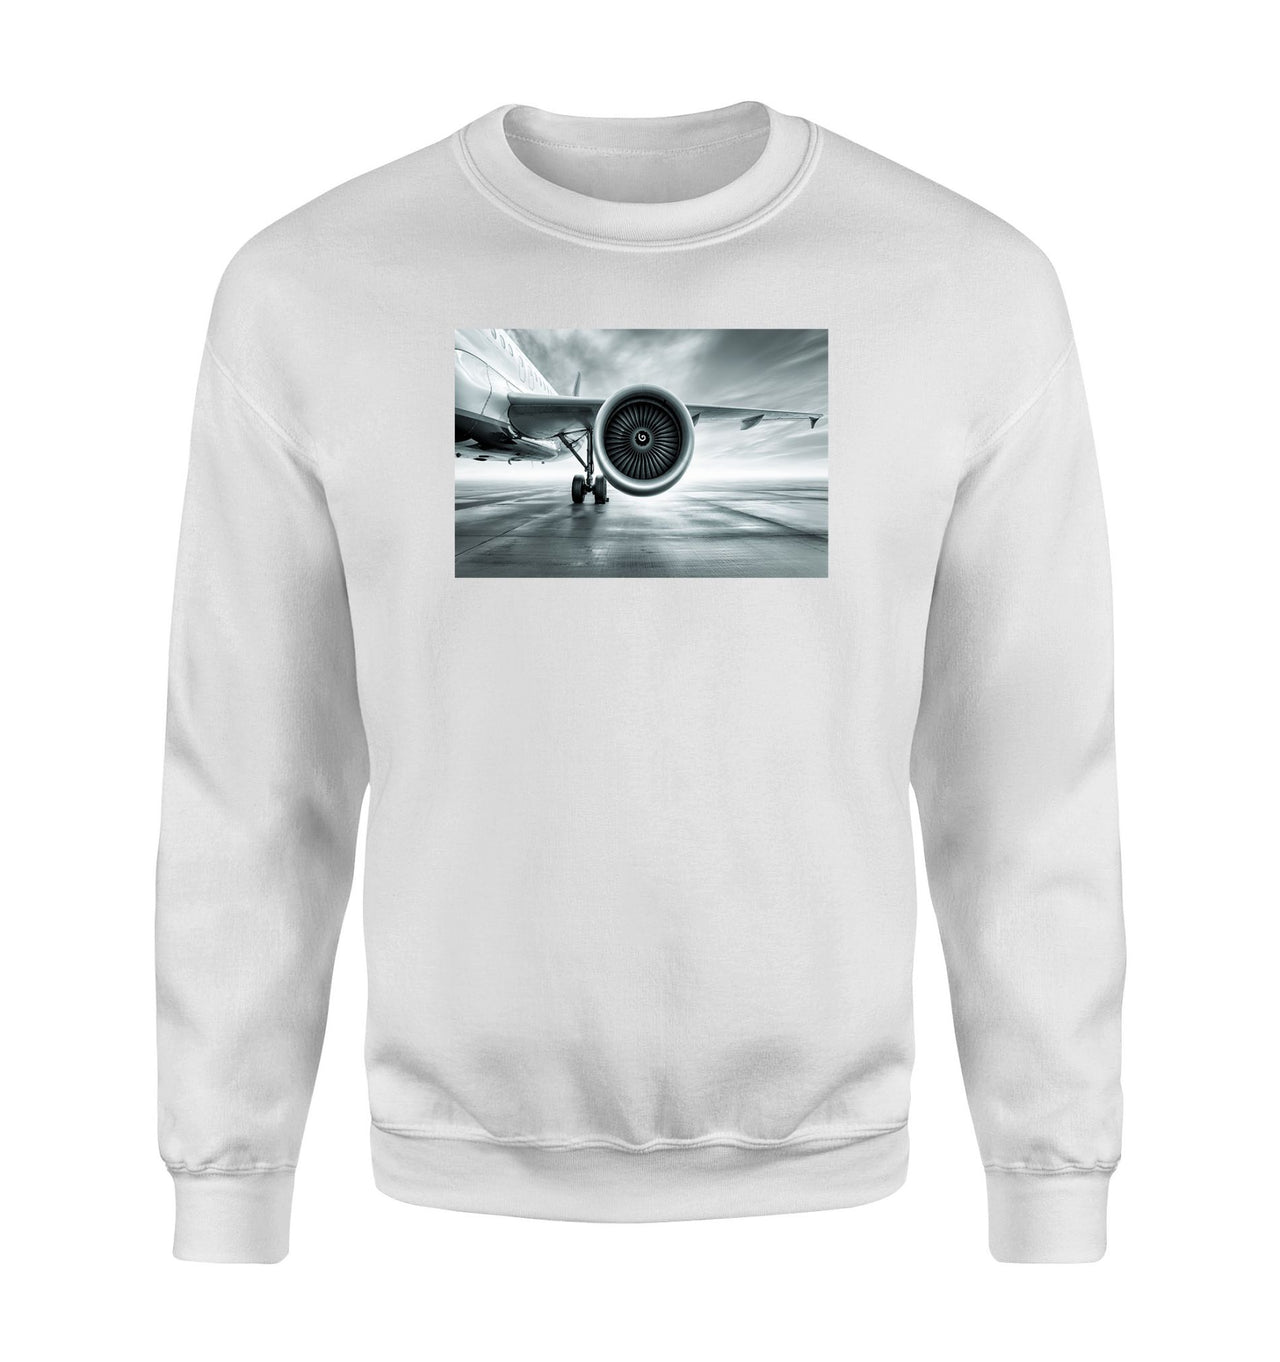 Super Cool Airliner Jet Engine Designed Sweatshirts